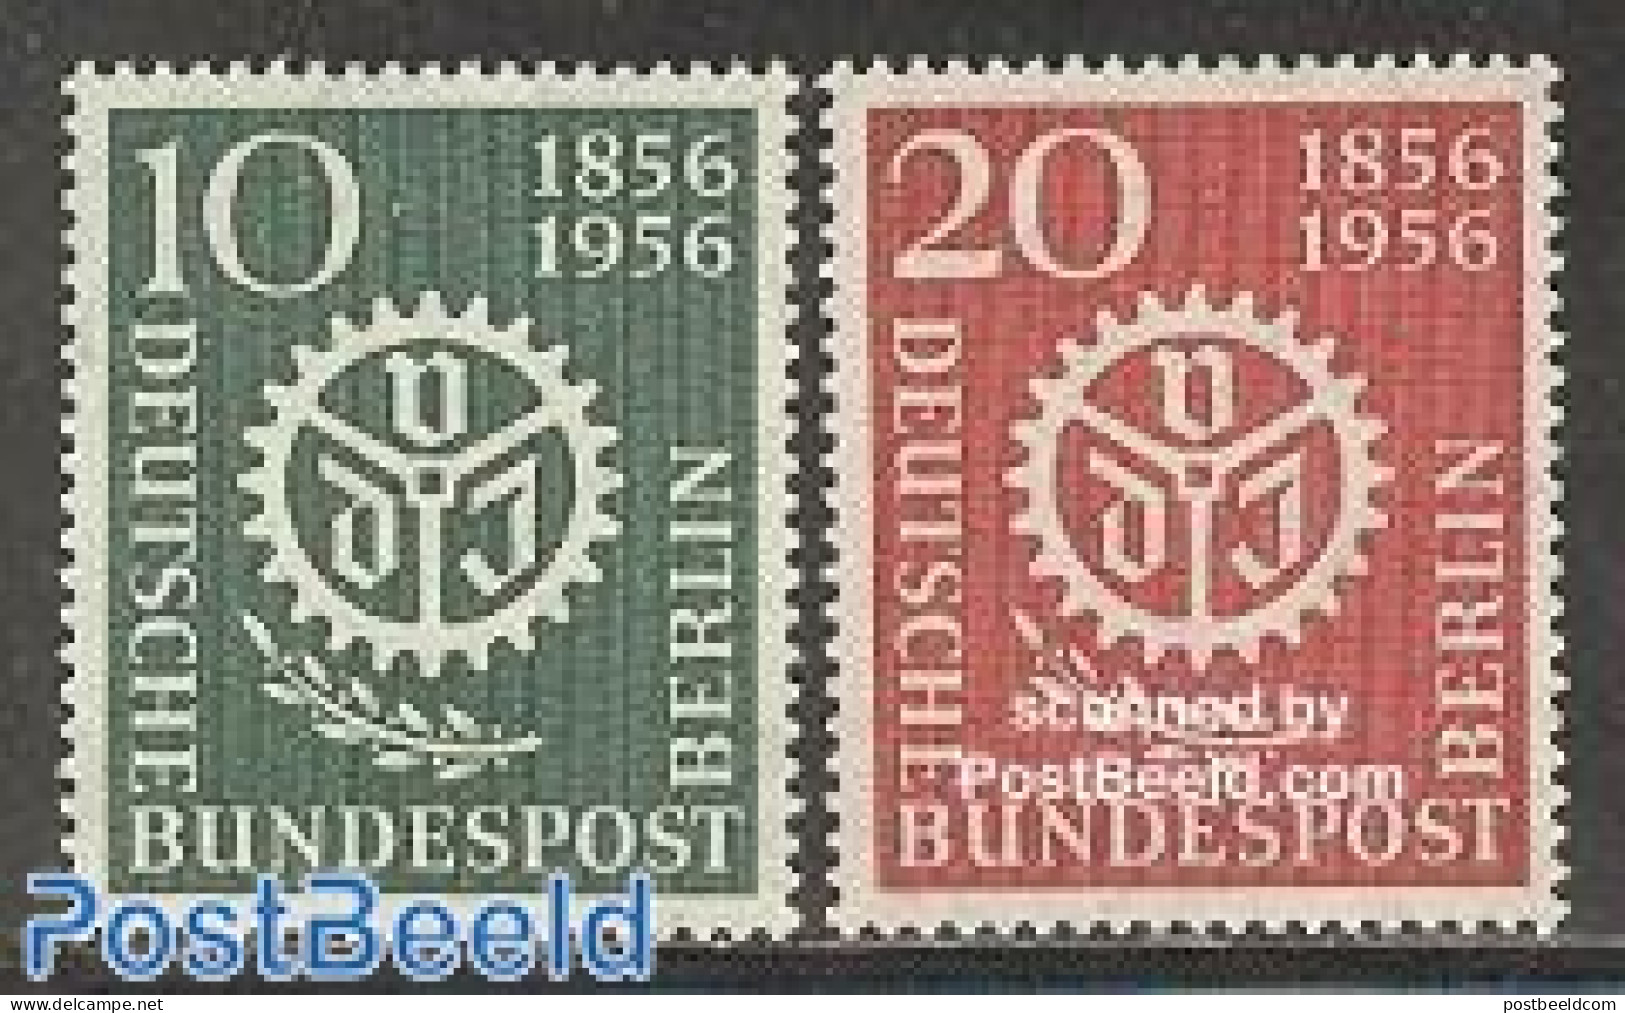 Germany, Berlin 1956 German Engineers 2v, Mint NH - Unused Stamps